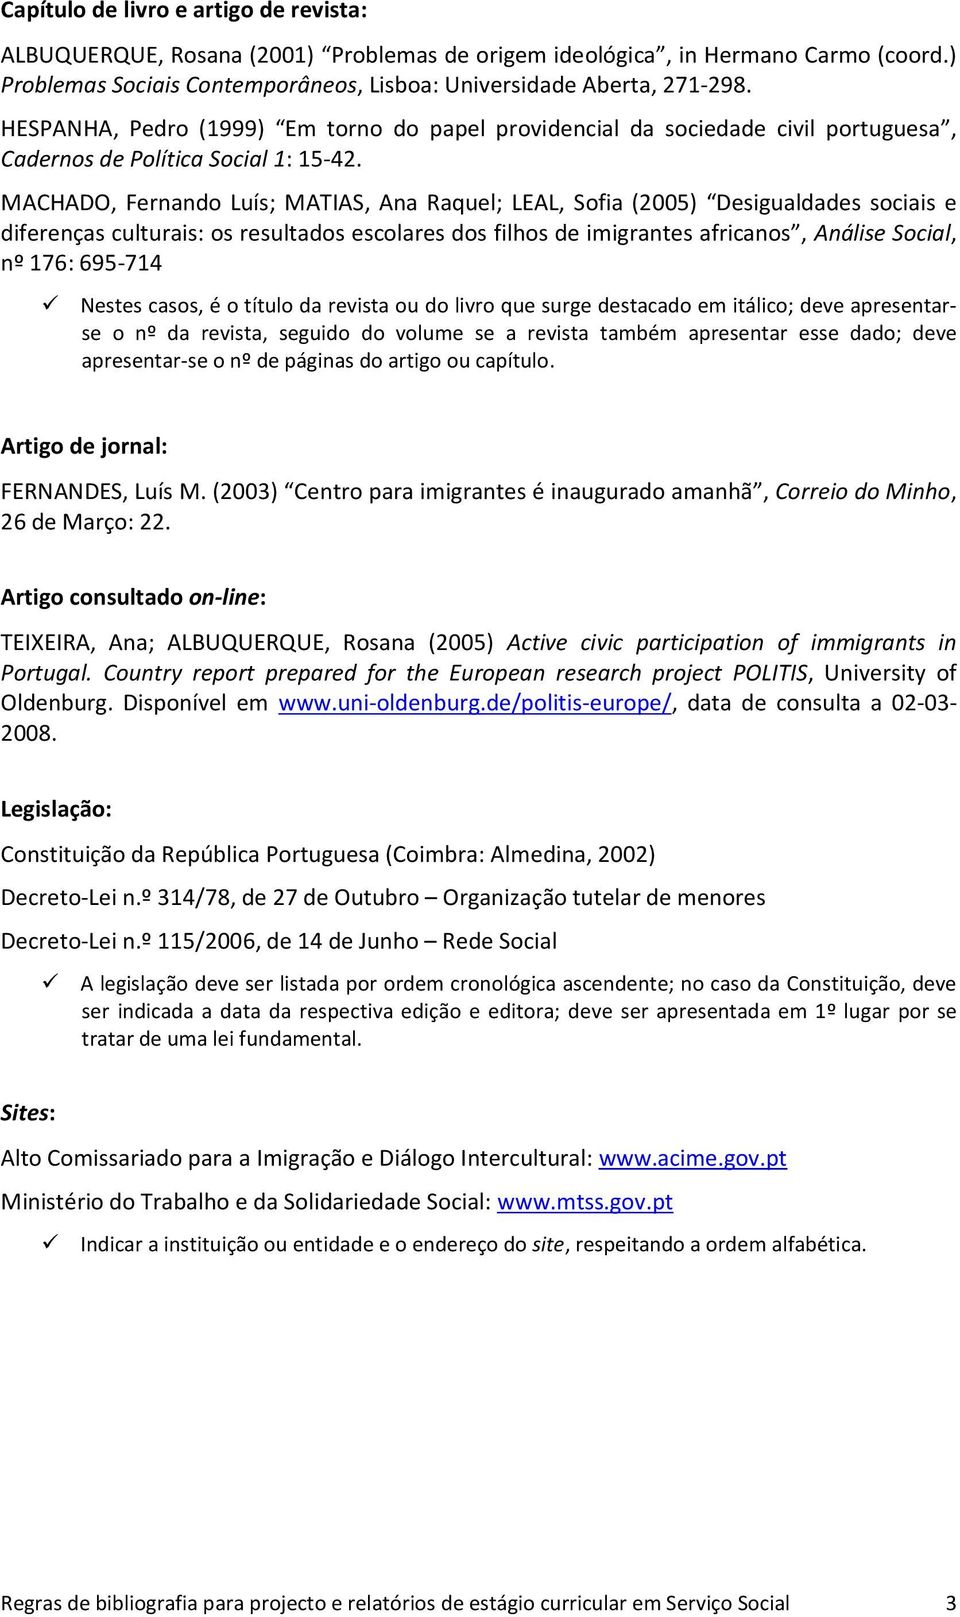 MACHADO, Fernando Luís; MATIAS, Ana Raquel; LEAL, Sofia (2005) Desigualdades sociais e diferenças culturais: os resultados escolares dos filhos de imigrantes africanos, Análise Social, nº 176: